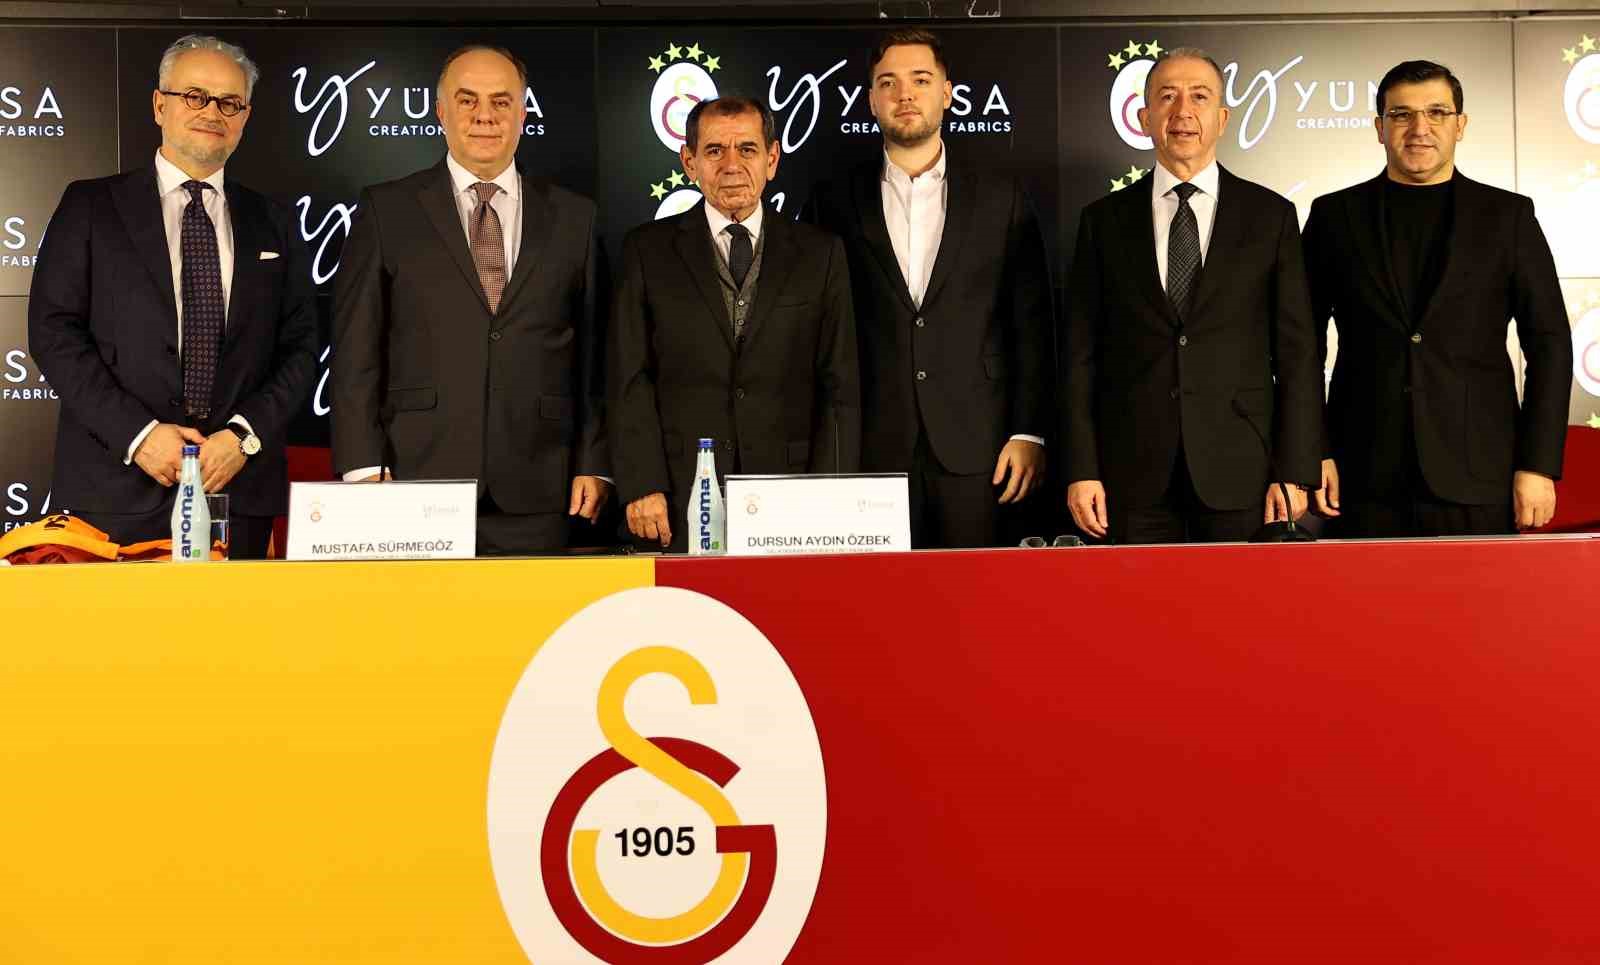 Galatasaray-ile-Yunsa-arasinda-sponsorluk-anlasmasi-ab3050feef1354705e82d6807637174f